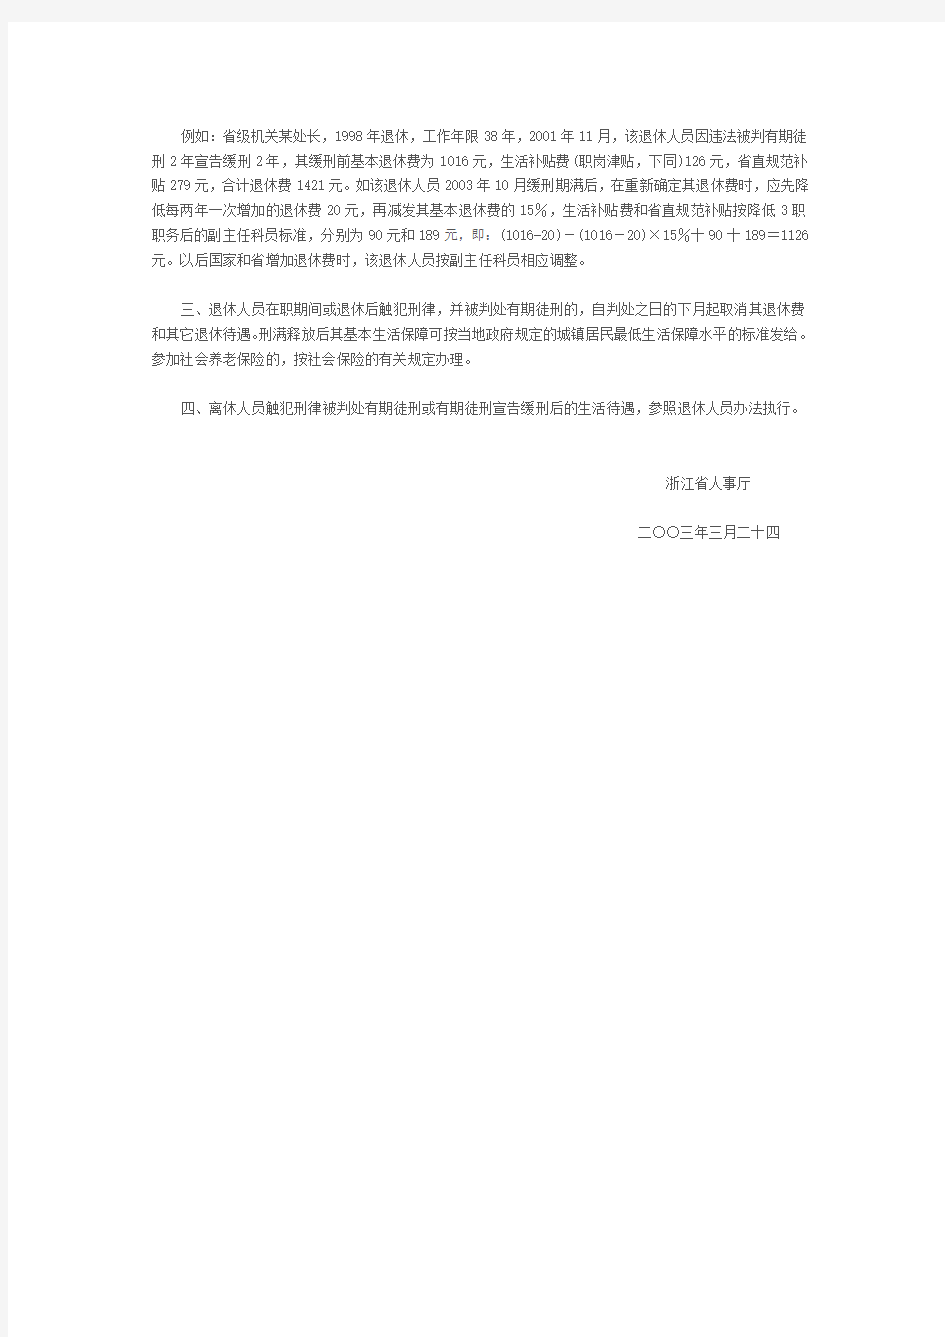 浙江省人事厅关于机关事业单位退休人员